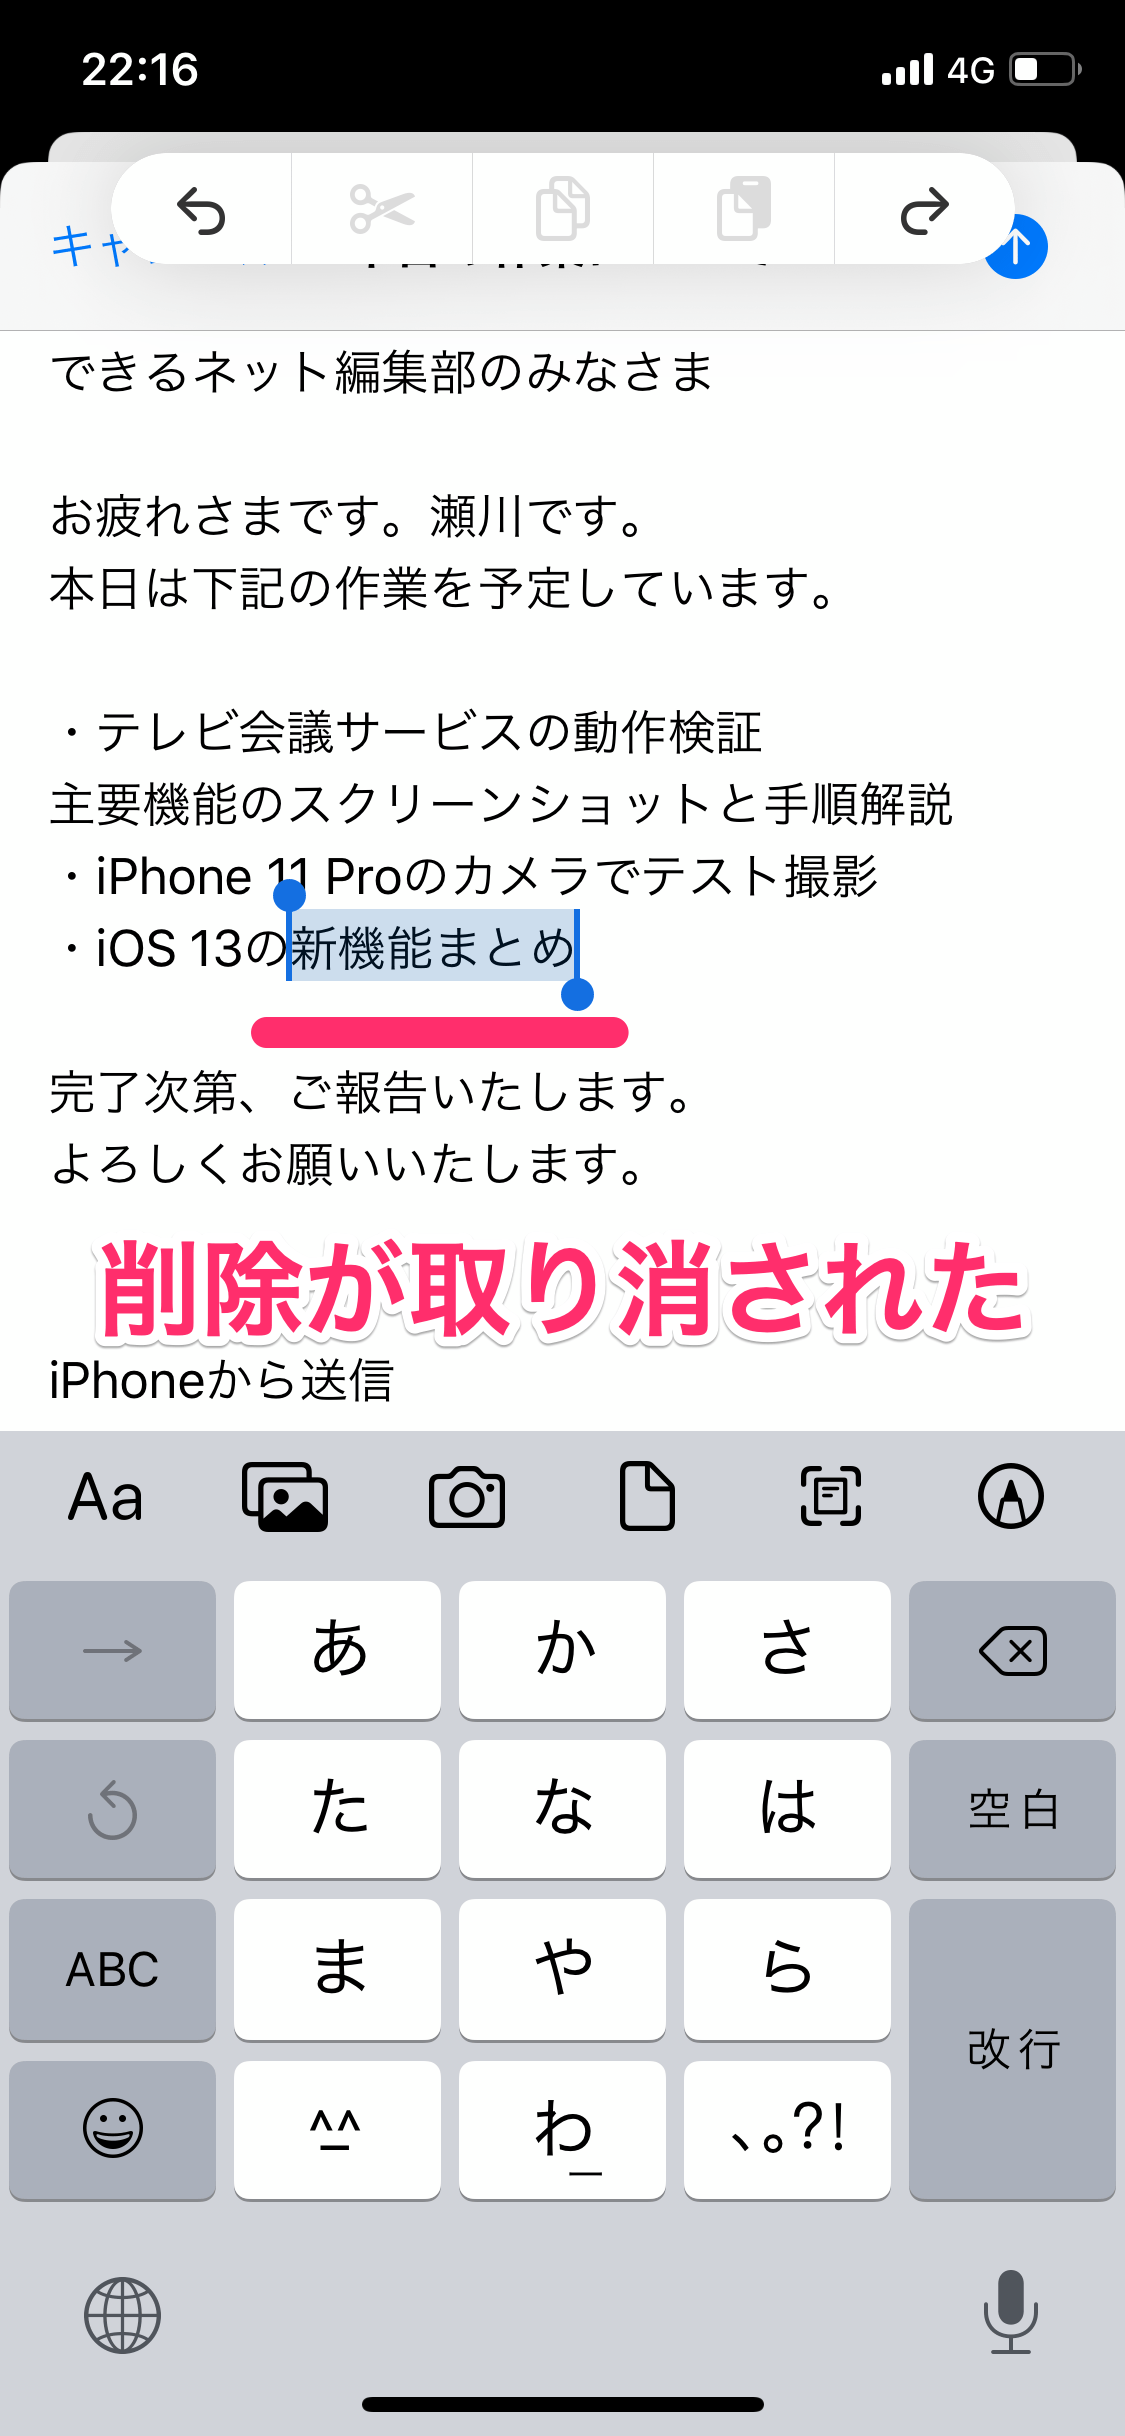 【iOS 13】「シェイクで取り消し」はもう古い！ 3本指でタップすればiPhoneを落とす心配なし